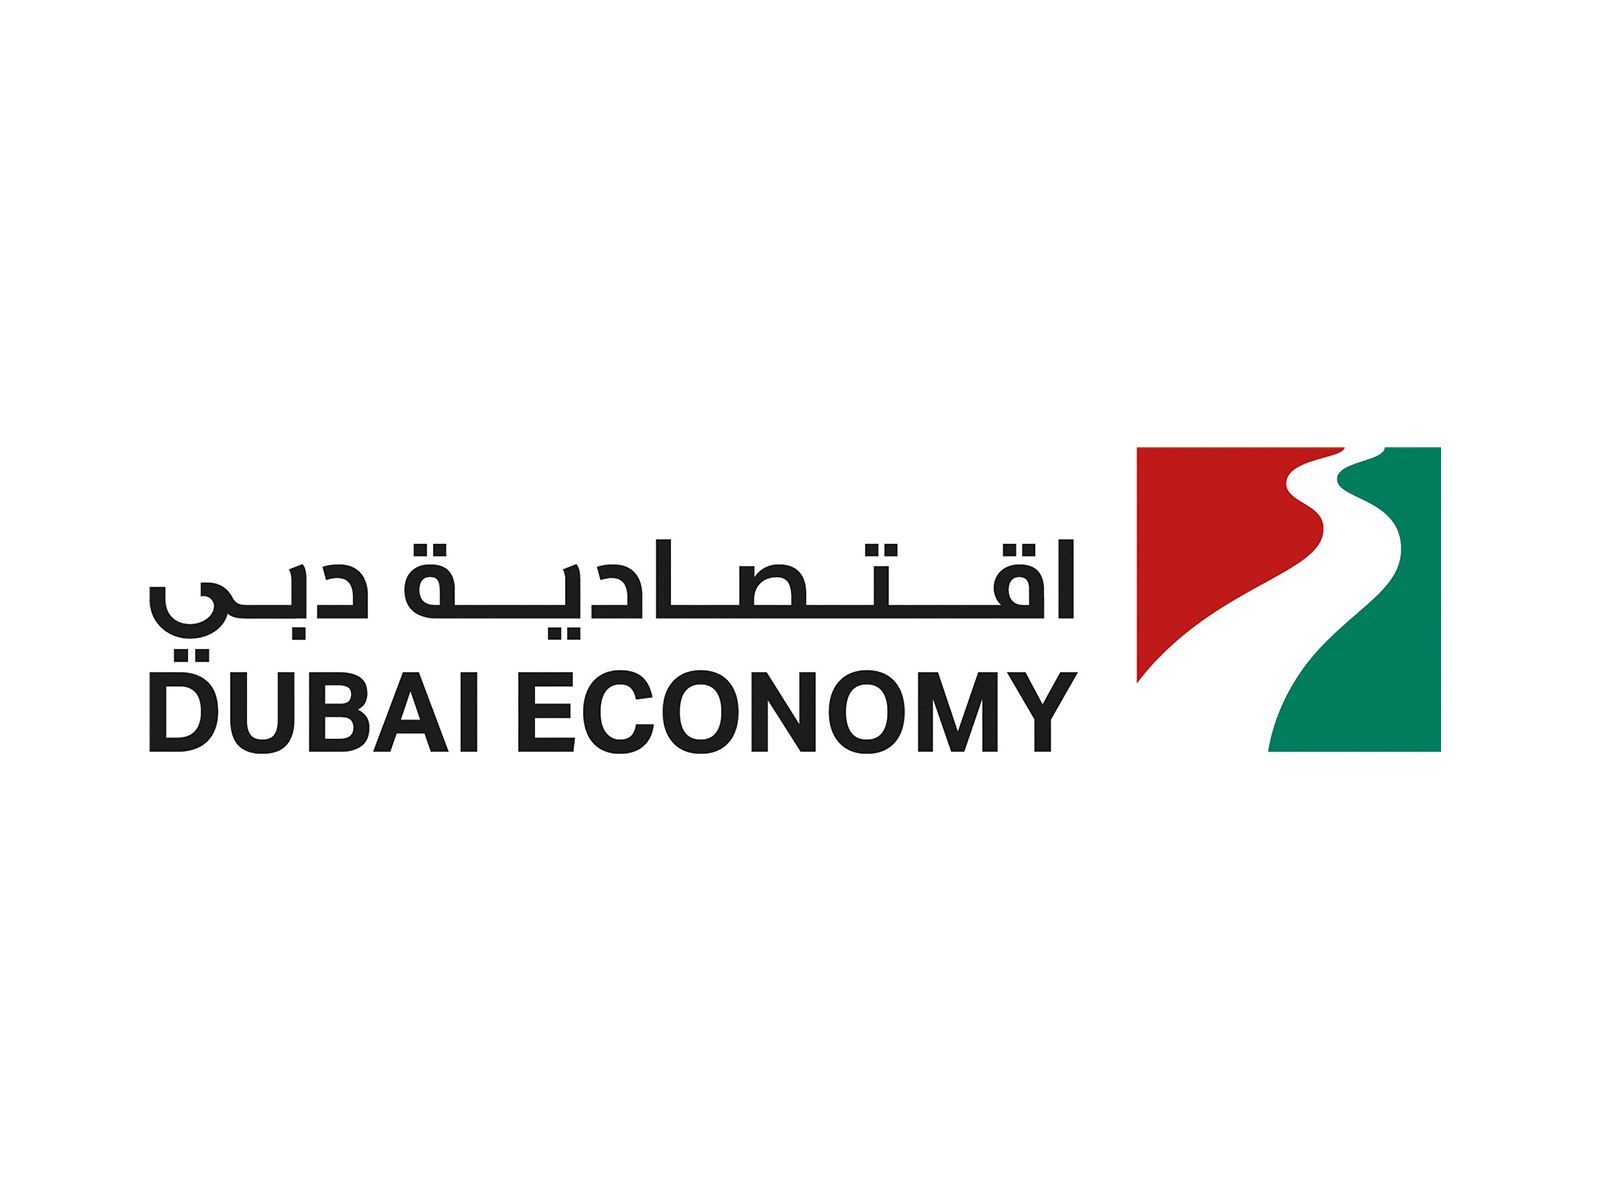 وكالة أنباء الإمارات - اقتصادية دبي تخالف 8 منشآت تجارية لم تلتزم بالتدابير الاحترازية للحد من انتشار كوفيد 19 - اخبار الامارات ENN